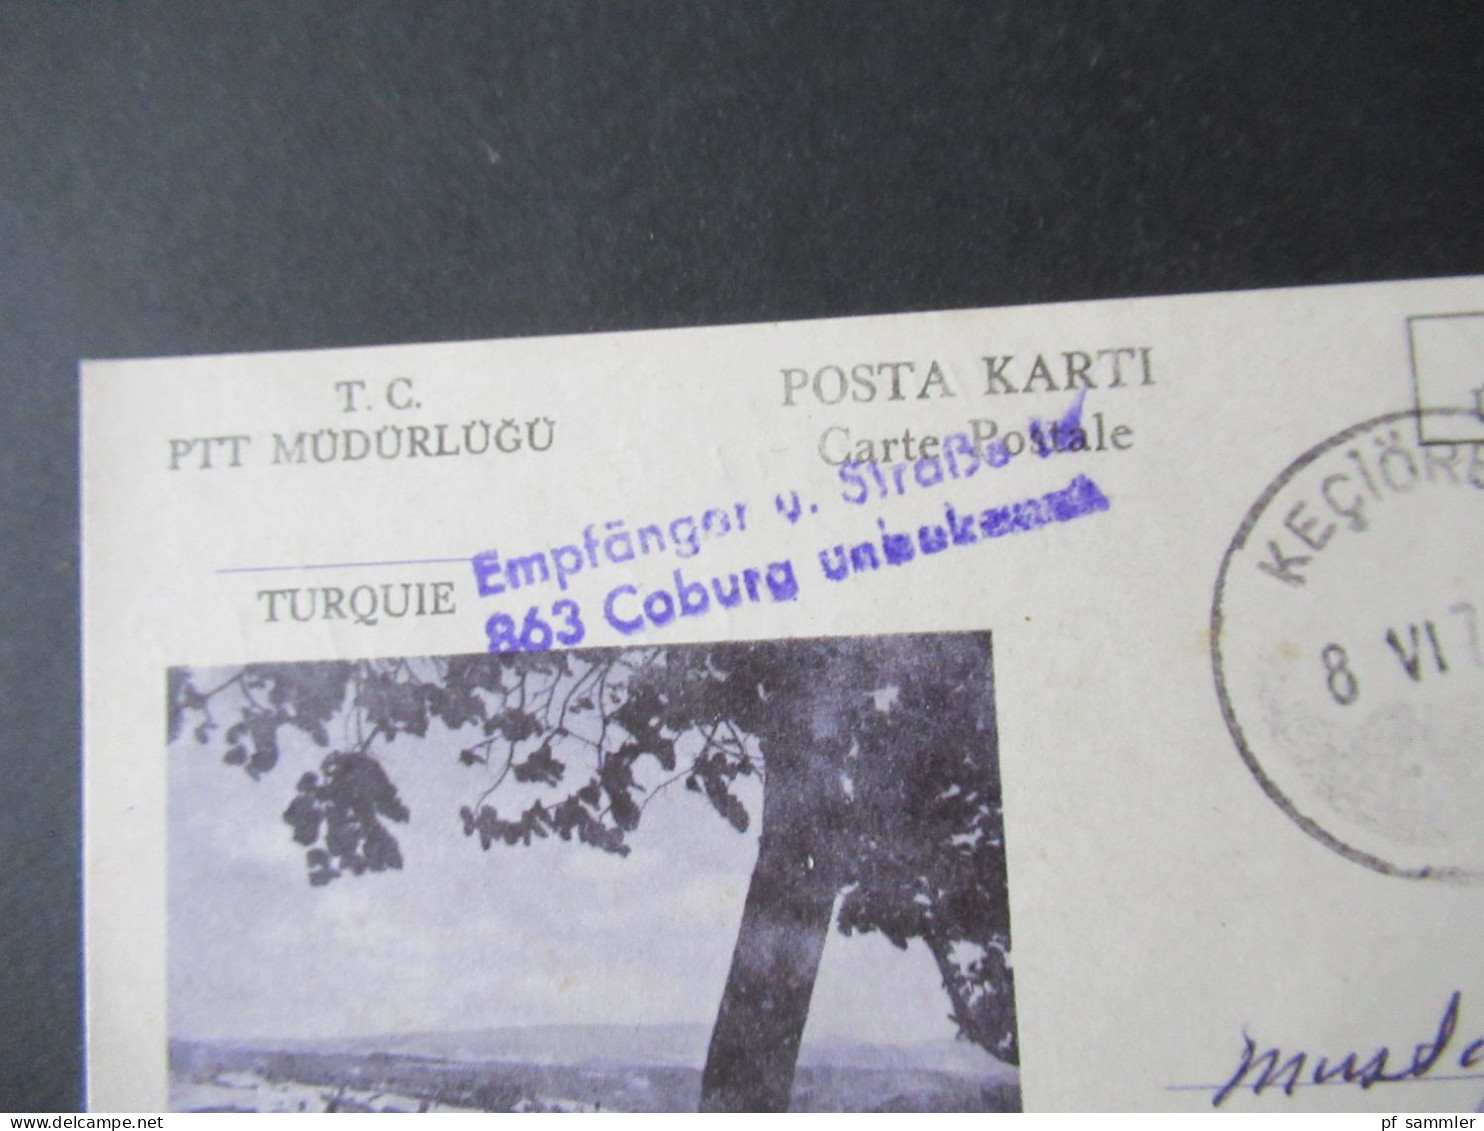 Türkei 1976 GA / P.P. Ücreti Ödenmistir Stempel Keciören Und Violetter L2 Empfänger U. Straße In 863 Coburg Unbekannt - Covers & Documents